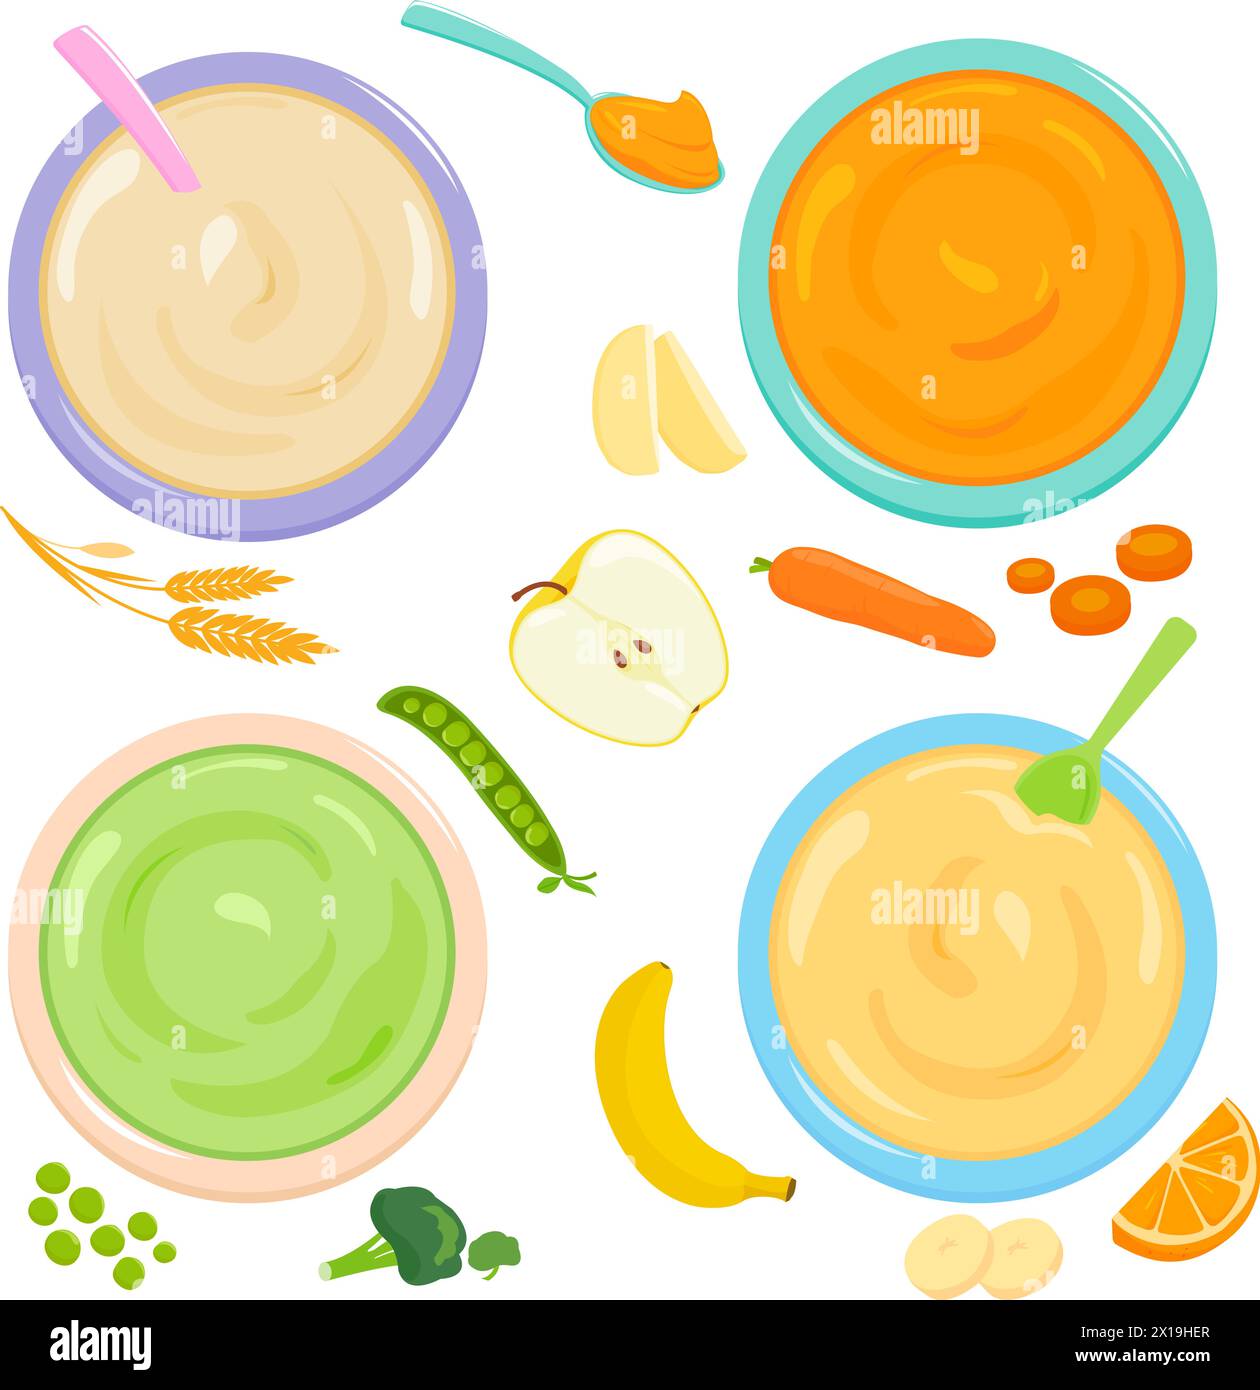 Bols de nourriture pour bébés et tout-petits. Purée de céréales, fruits et légumes. Vue de dessus. Collection d'illustrations vectorielles Illustration de Vecteur